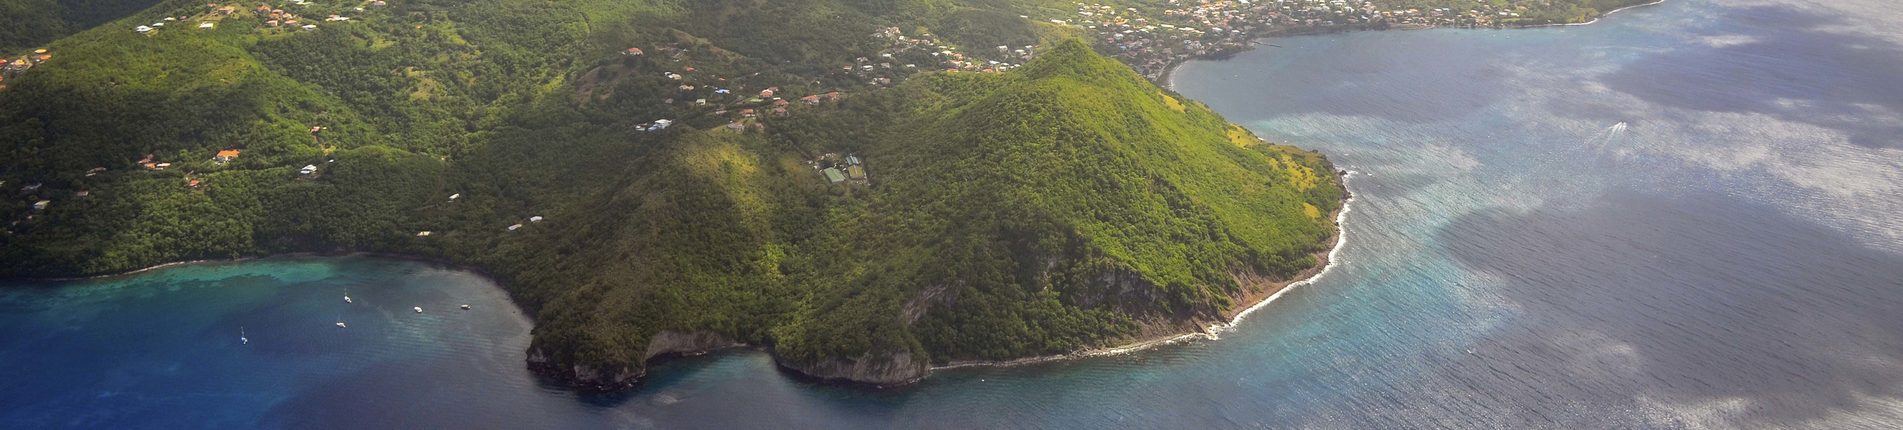 Fort de France, Martinik